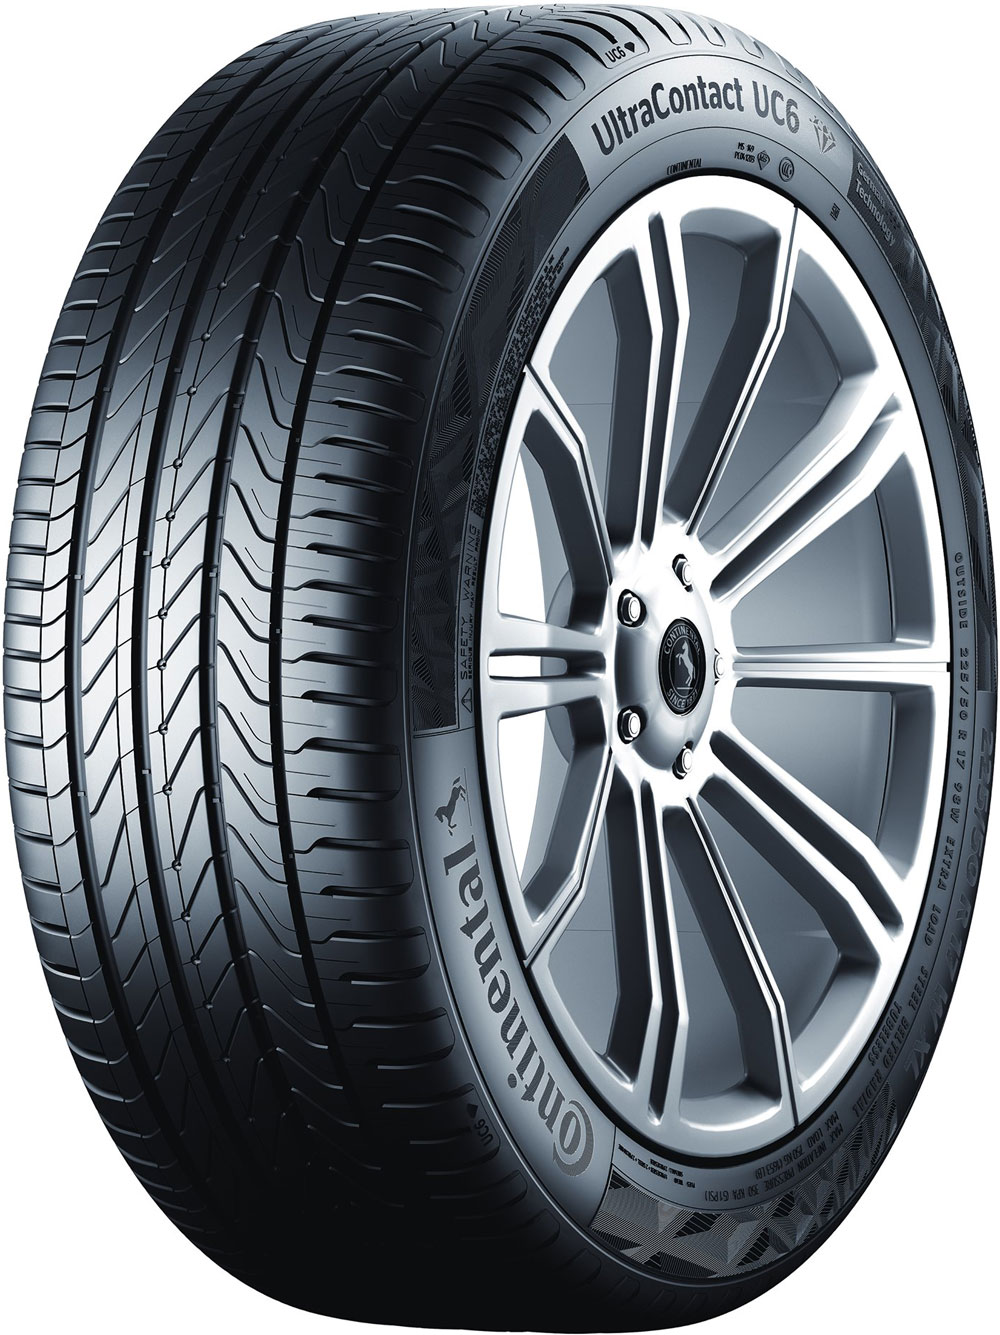 Автомобилни гуми CONTINENTAL UCXL XL 215/55 R16 97H